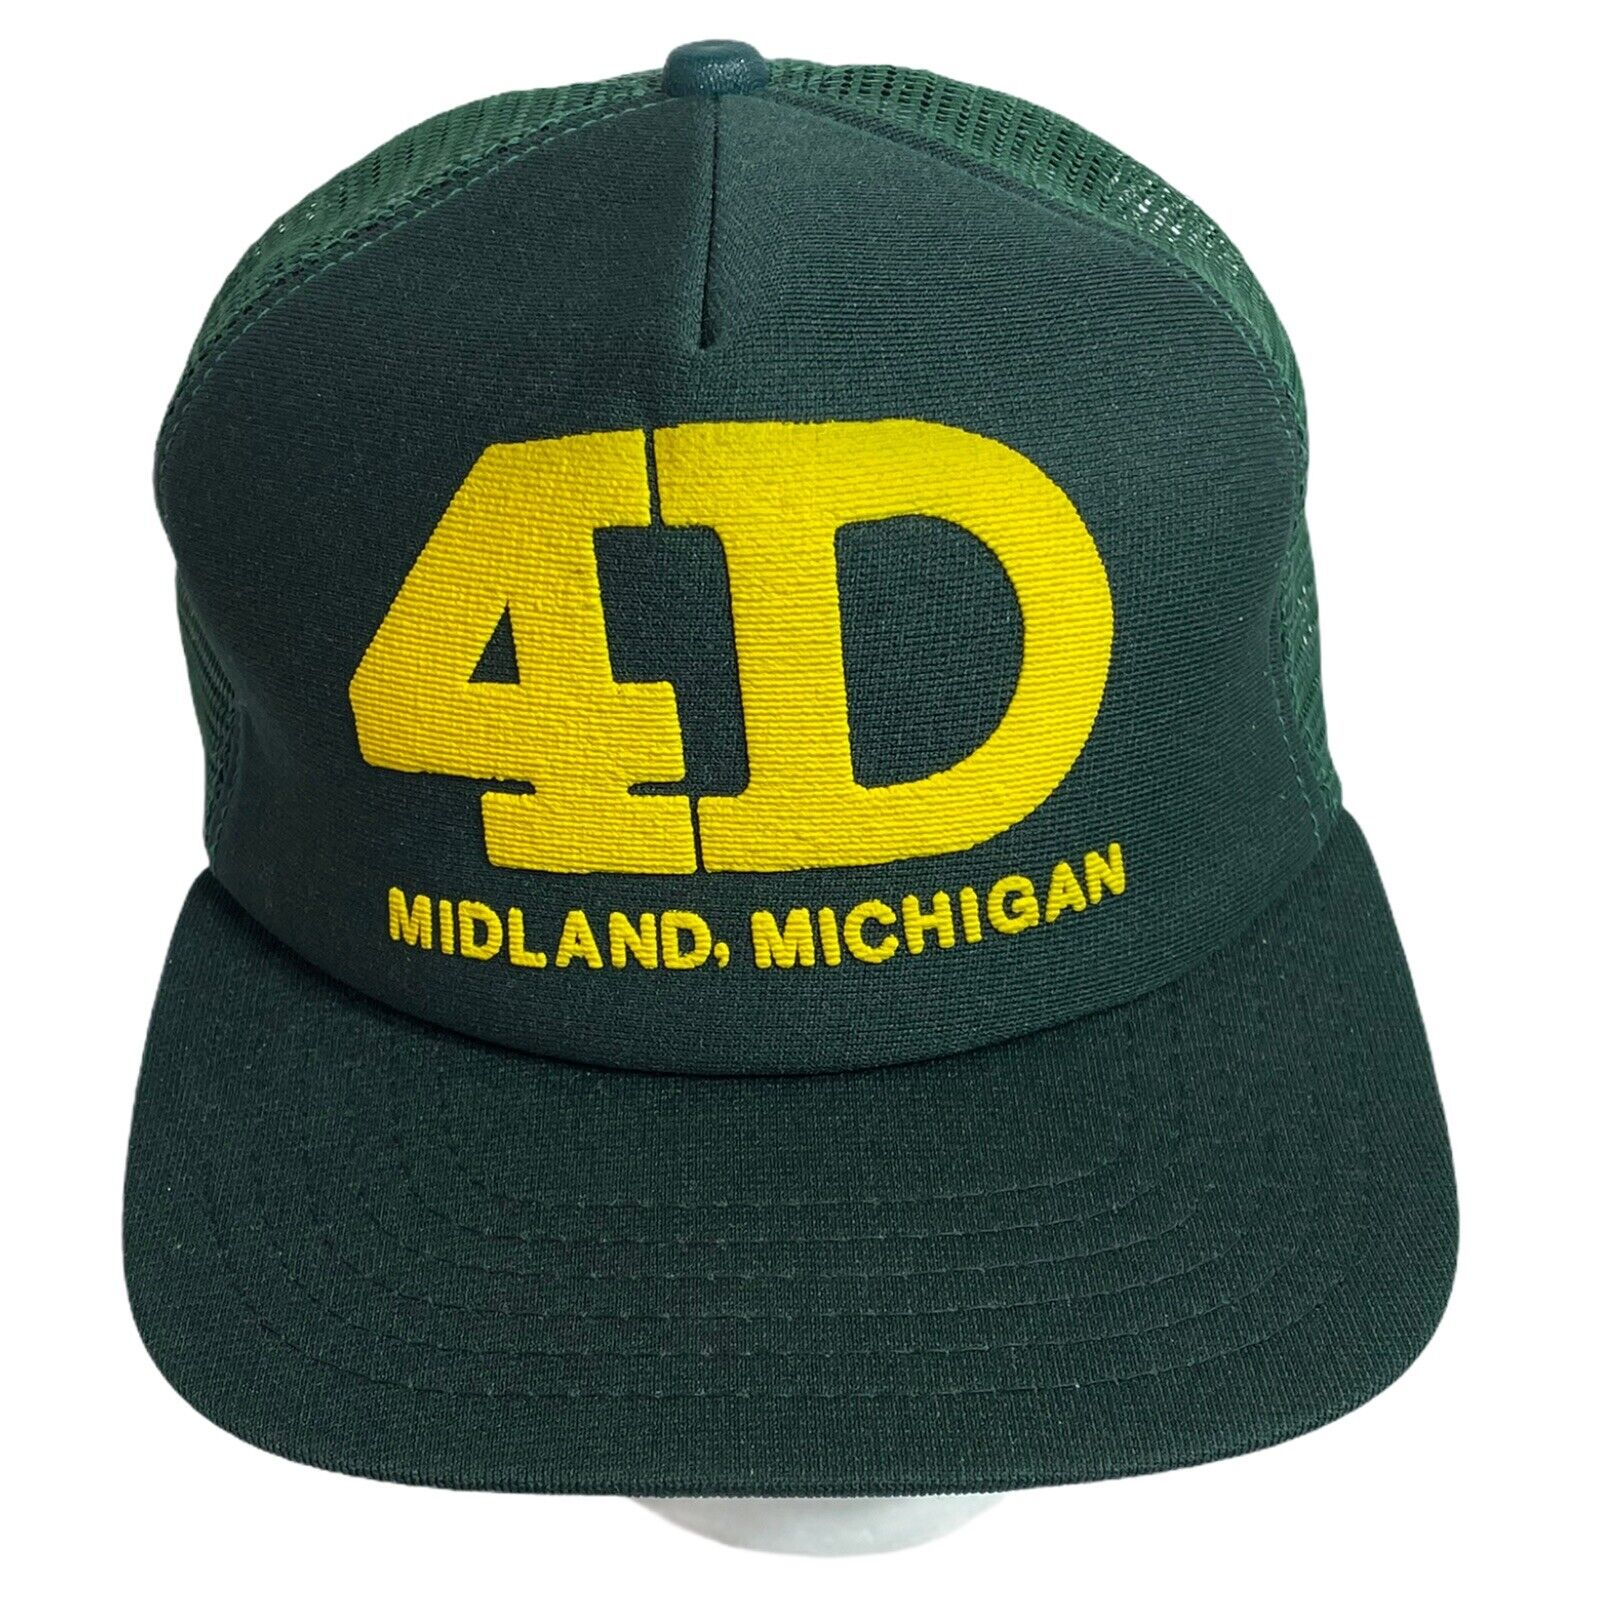 Vintage New Era 4D Green Trucker Hat in | MI Mesh the Made Midland eBay USA